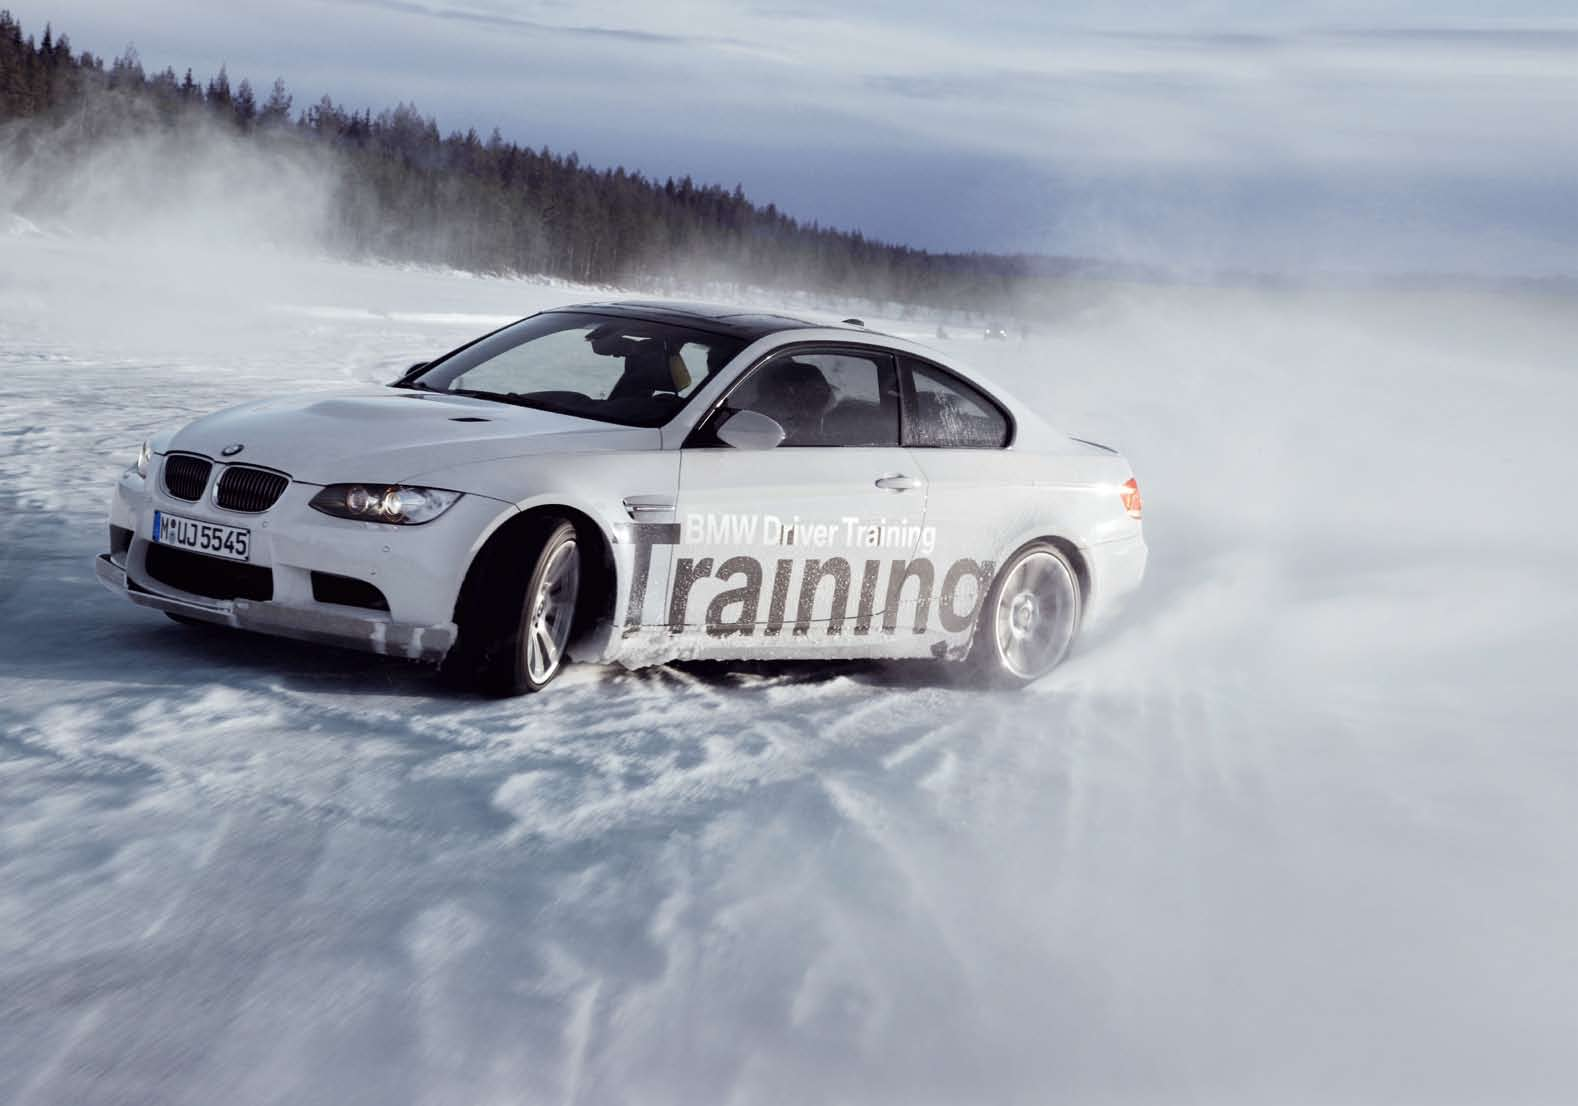 OSIXT-NEWS Freude am Schnee: Mit dem BMW M3 Coupé Grenzen testen beim BMW Ice Perfection Training in Arjeplog, Schweden. schöner driften!